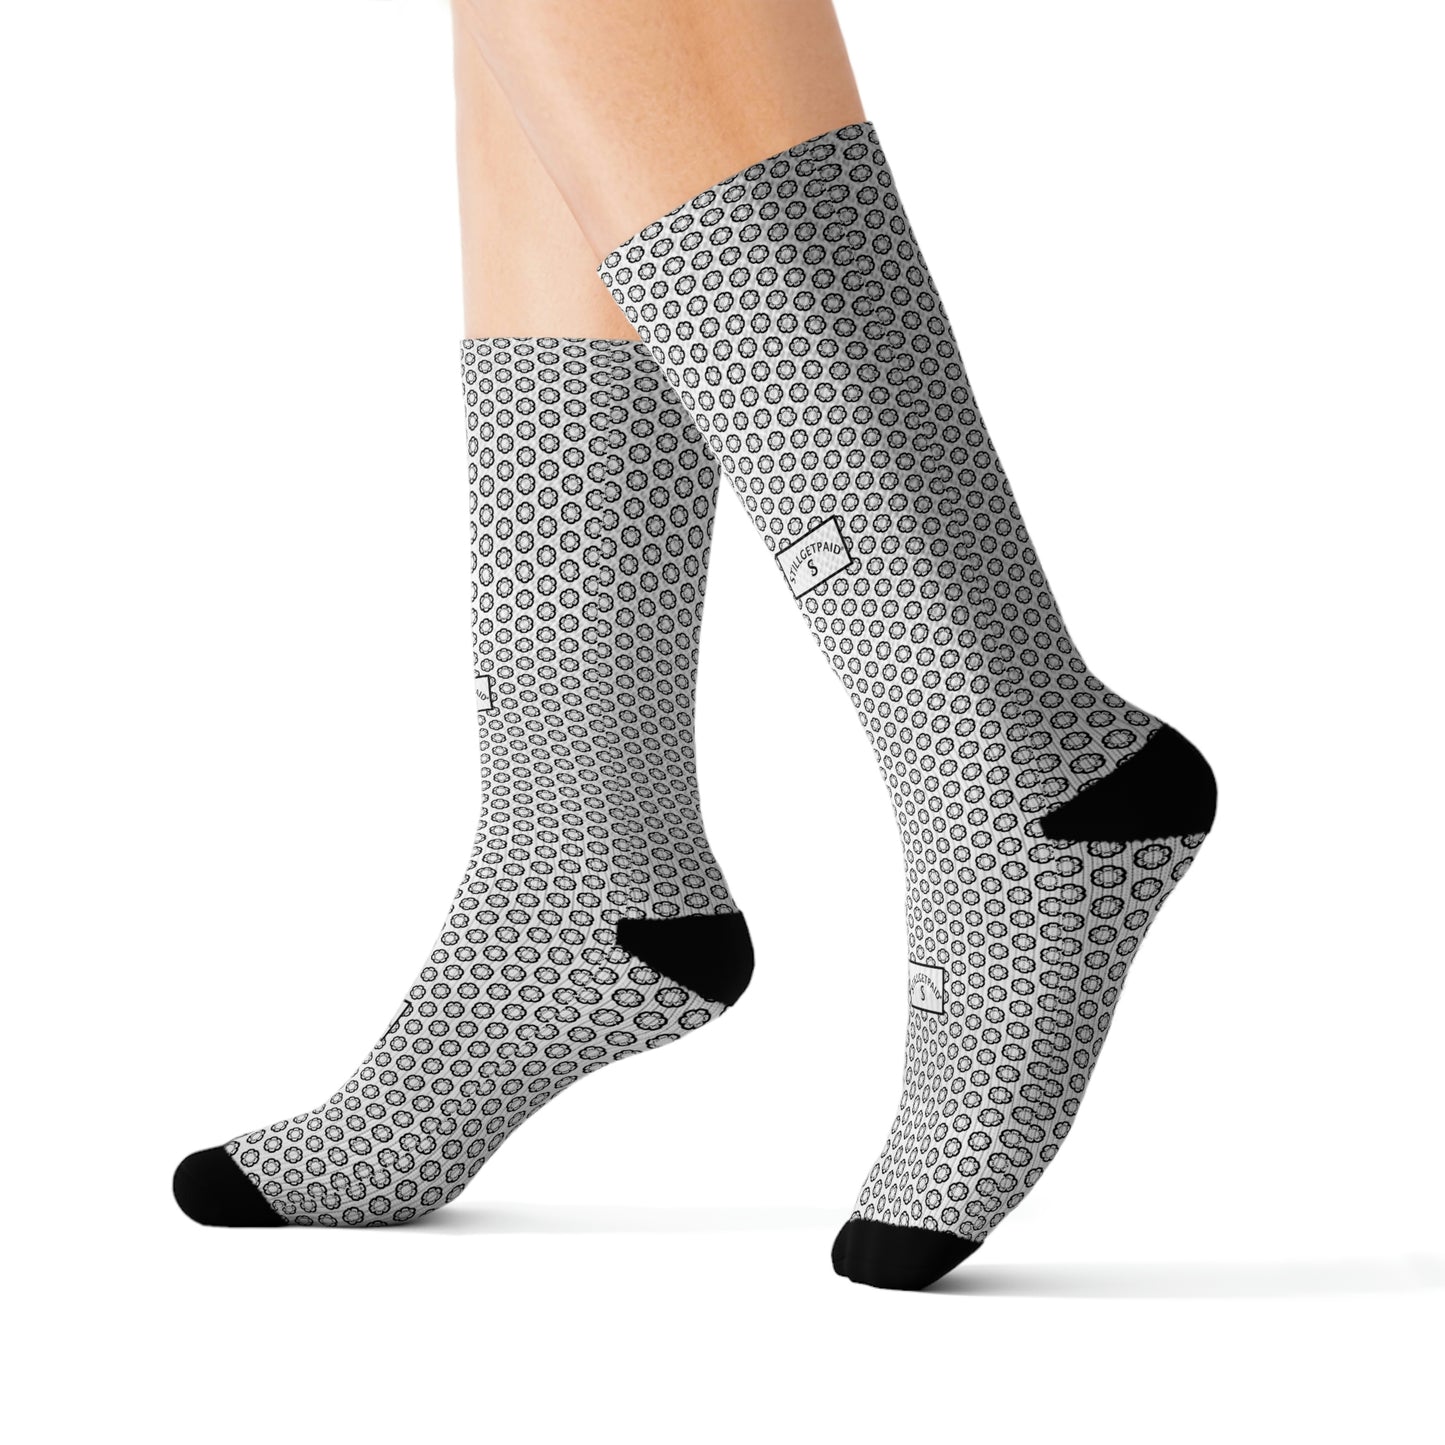 STILLGETPAID APPAREL LABEL Sublimation Socks